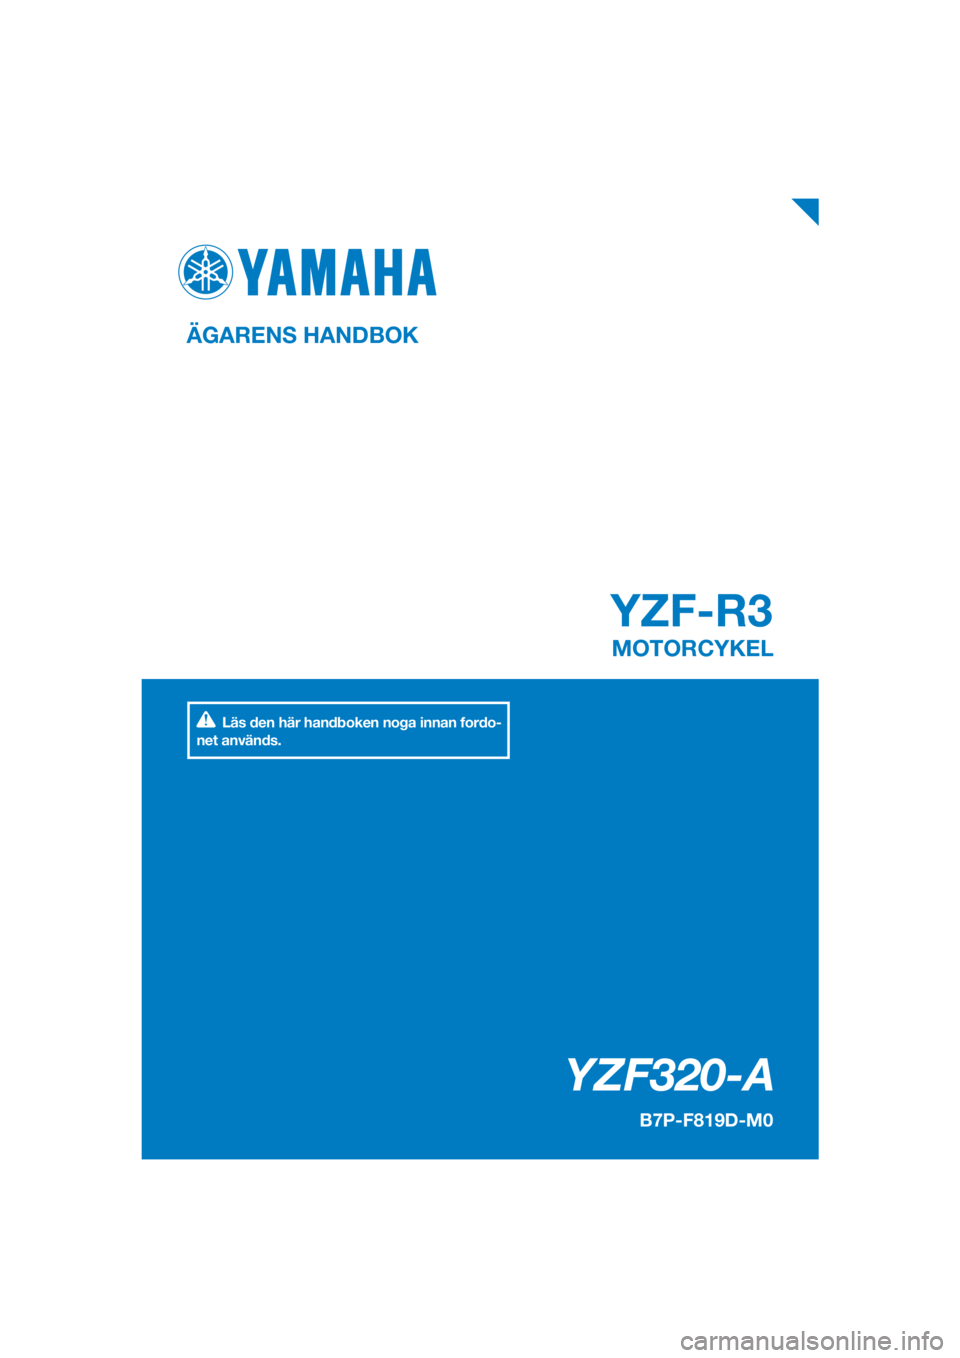 YAMAHA YZF-R3 2019  Bruksanvisningar (in Swedish) DIC183
YZF-R3
   YZF320-A
ÄGARENS HANDBOK
B7P-F819D-M0
MOTORCYKEL
[Swedish  (M)]
Läs den här handboken noga innan fordo-
net används. 